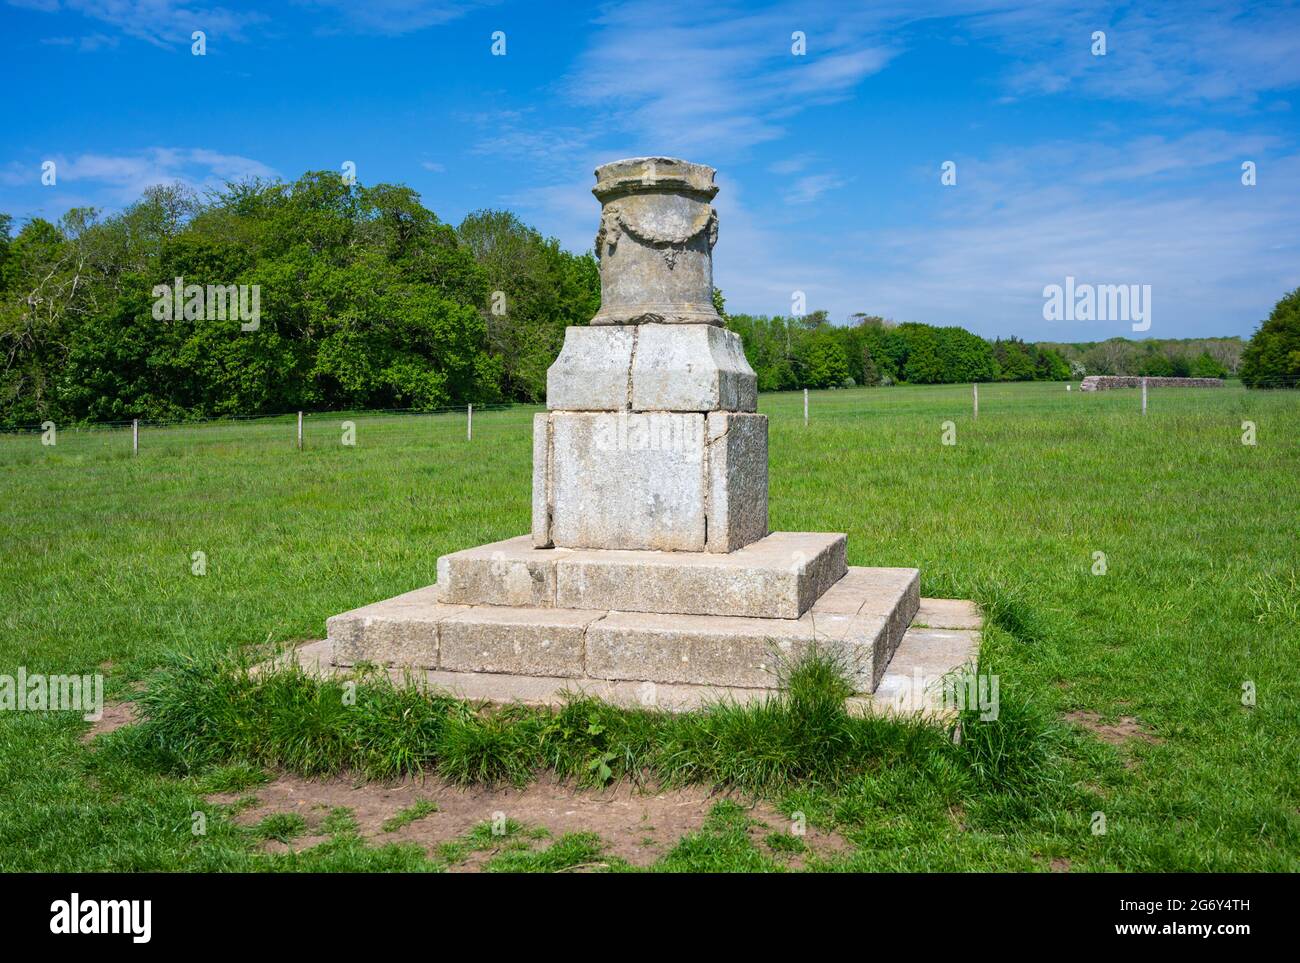 Monumento a un sitio en 1855 presentado por el Almirante Lord Lyons a Henry Granville, Duque de Norfolk. Cerca de la Torre Hiorne en Arundel Park, West Sussex, Reino Unido. Foto de stock